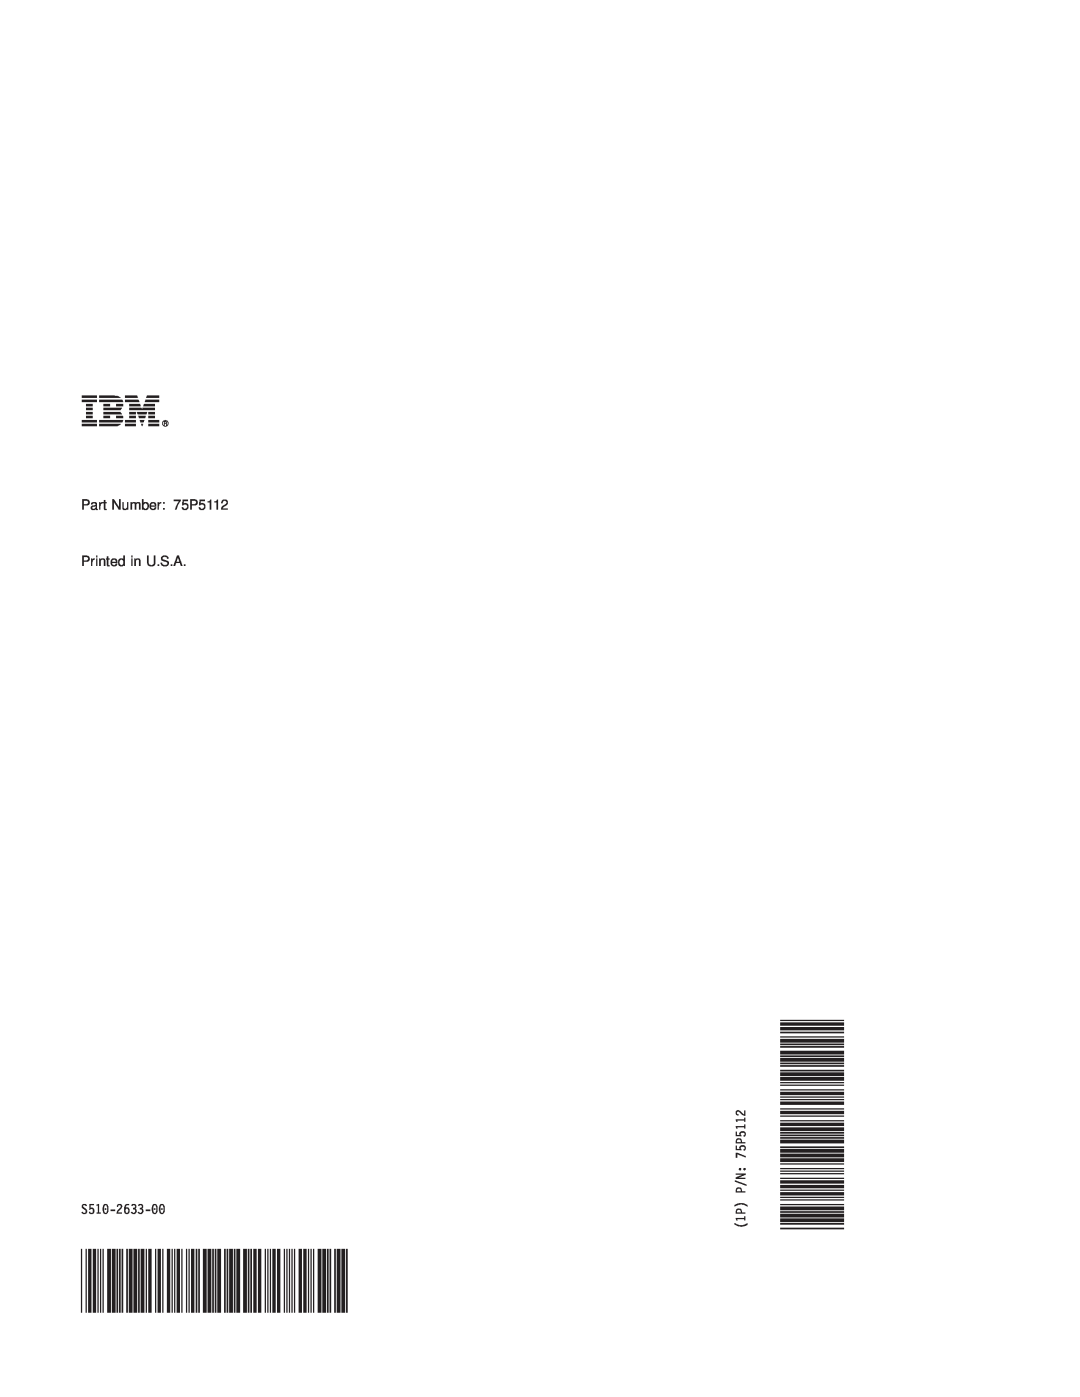 IBM M22 MFP manual Ibmr, Part Number 75P5112 Printed in U.S.A, S510-2633-00, 1P P/N 75P5112 